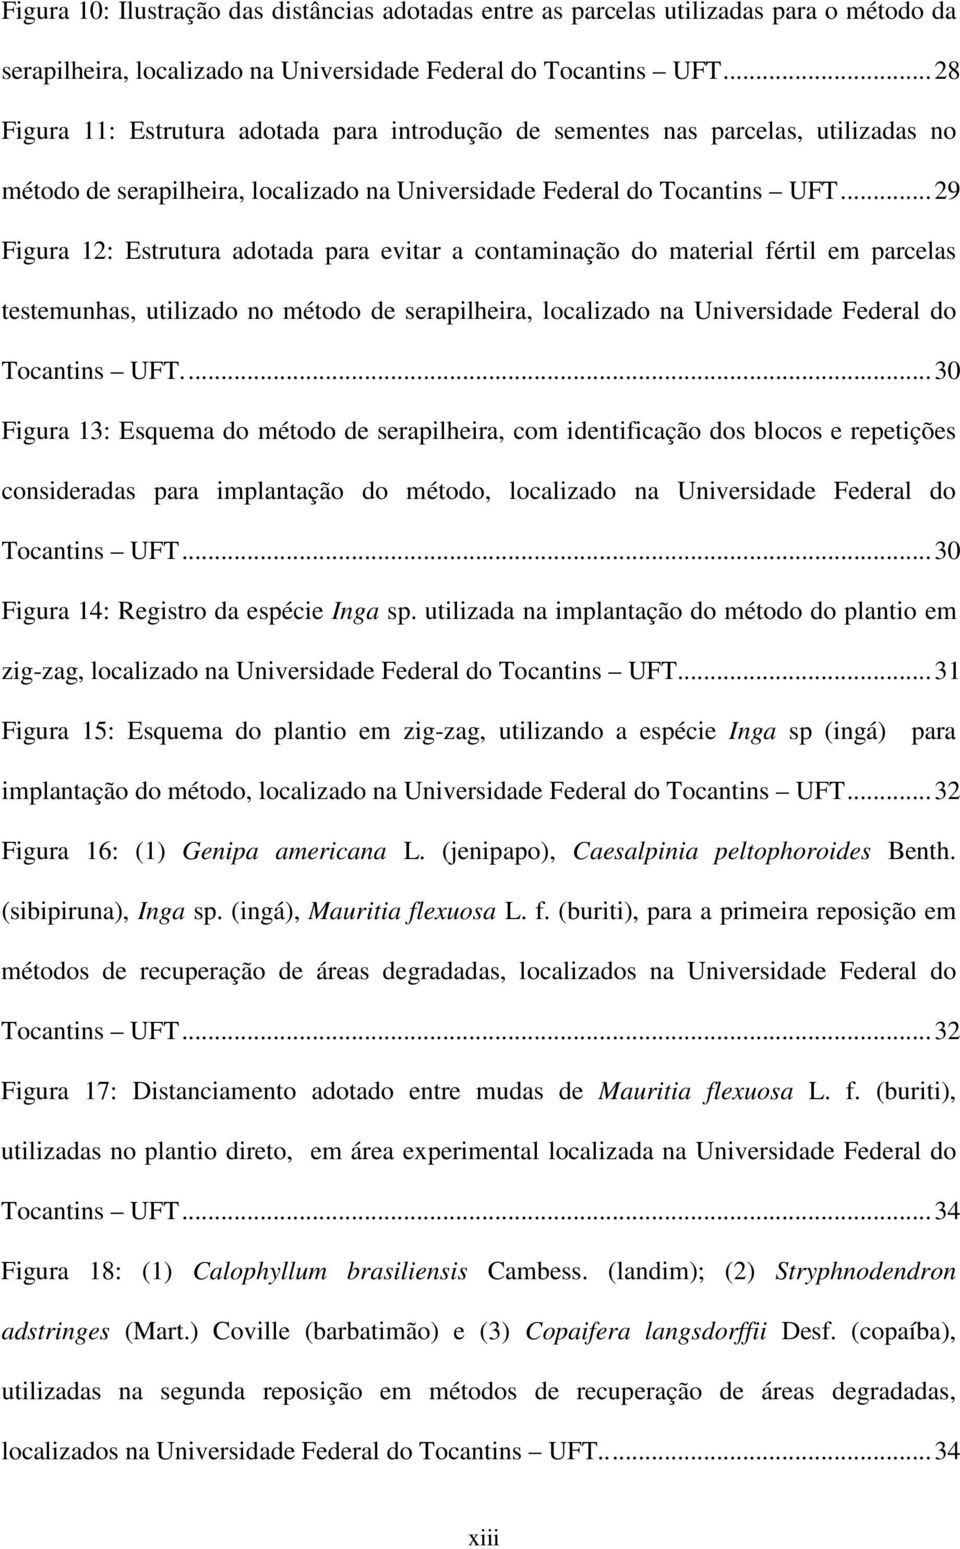 ..29 Figura 12: Estrutura adotada para evitar a contaminação do material fértil em parcelas testemunhas, utilizado no método de serapilheira, localizado na Universidade Federal do Tocantins UFT.